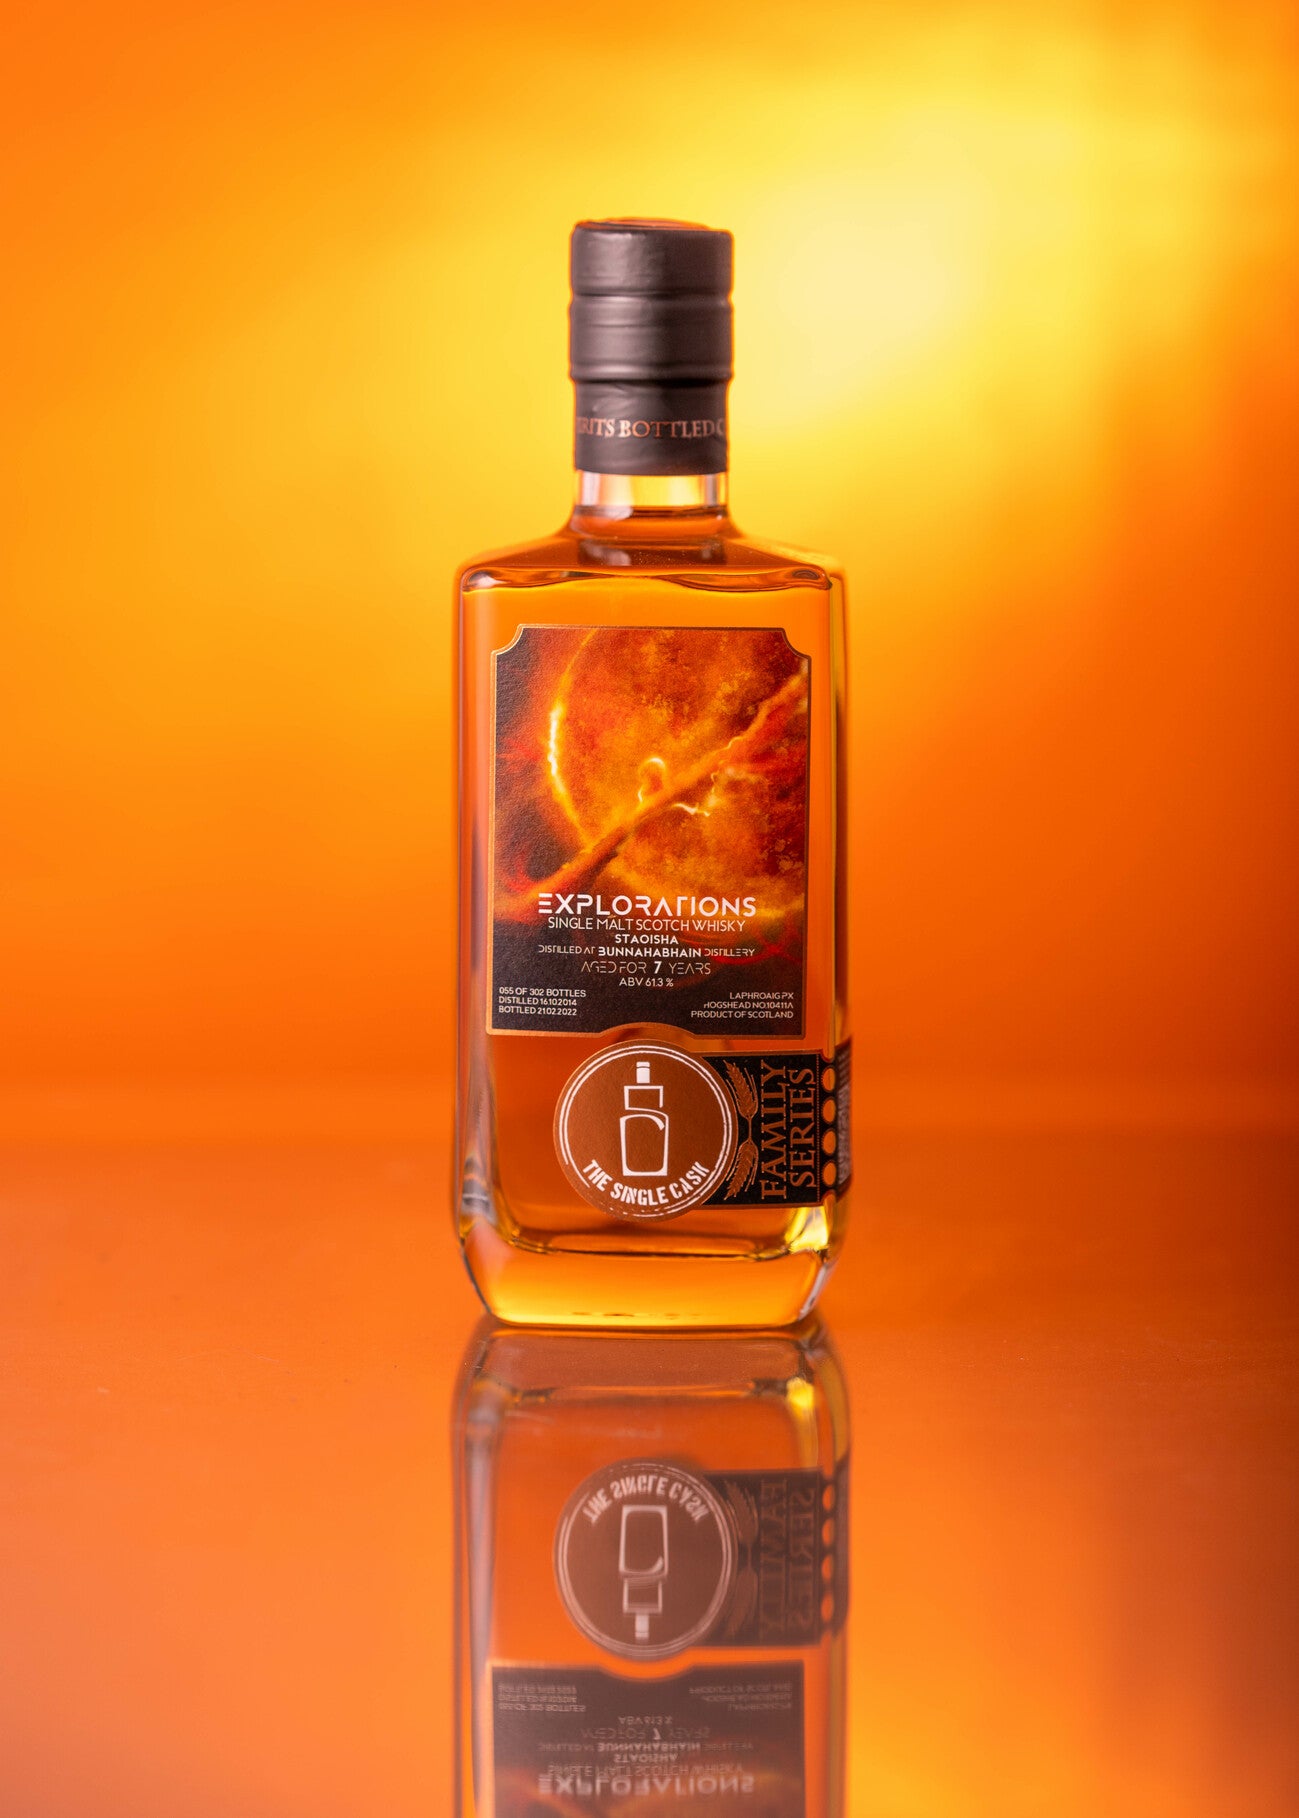 Staoisha Bunnahabhain single cask scotch whisky